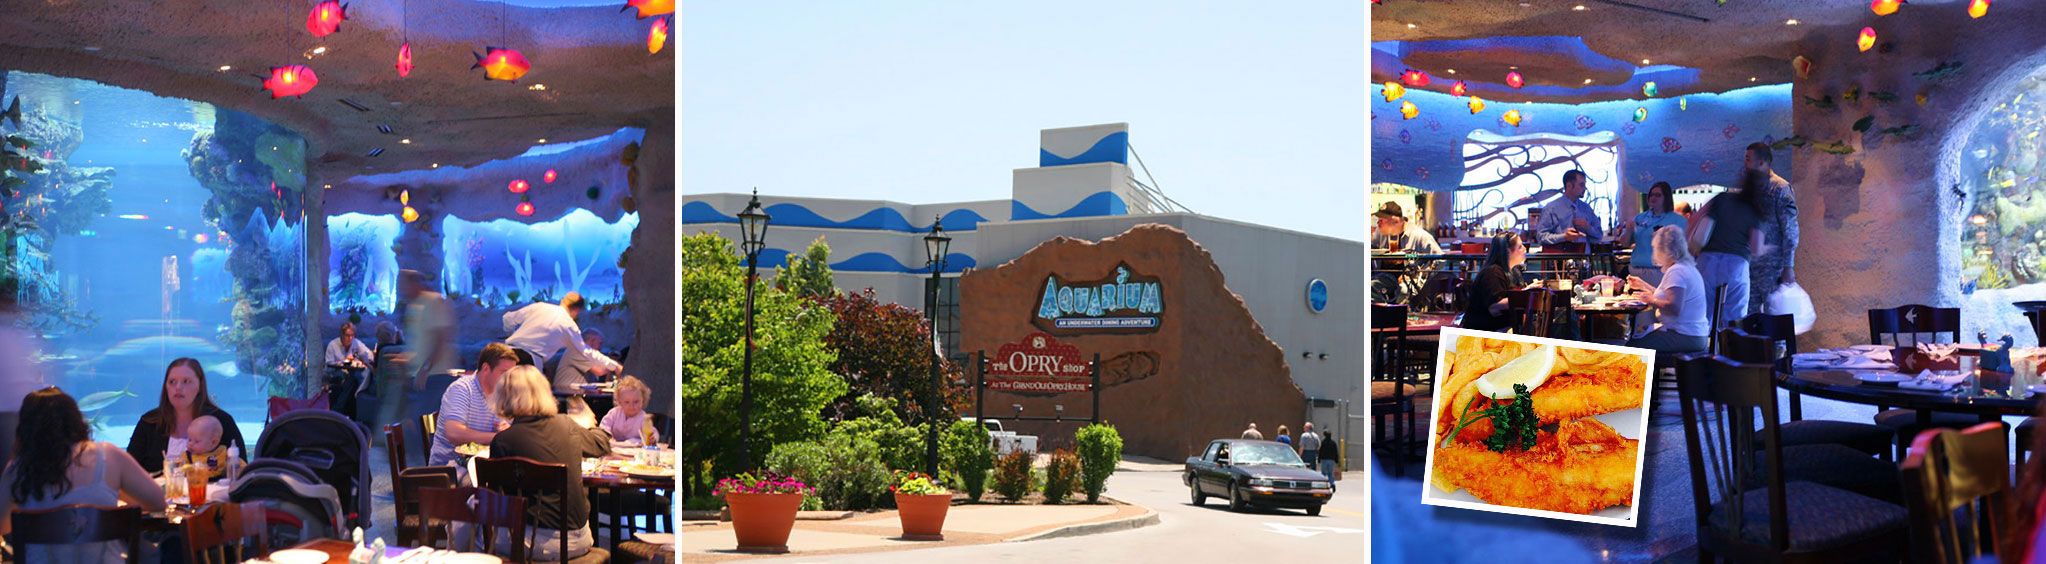 Aquarium Restaurant at Opry Mills